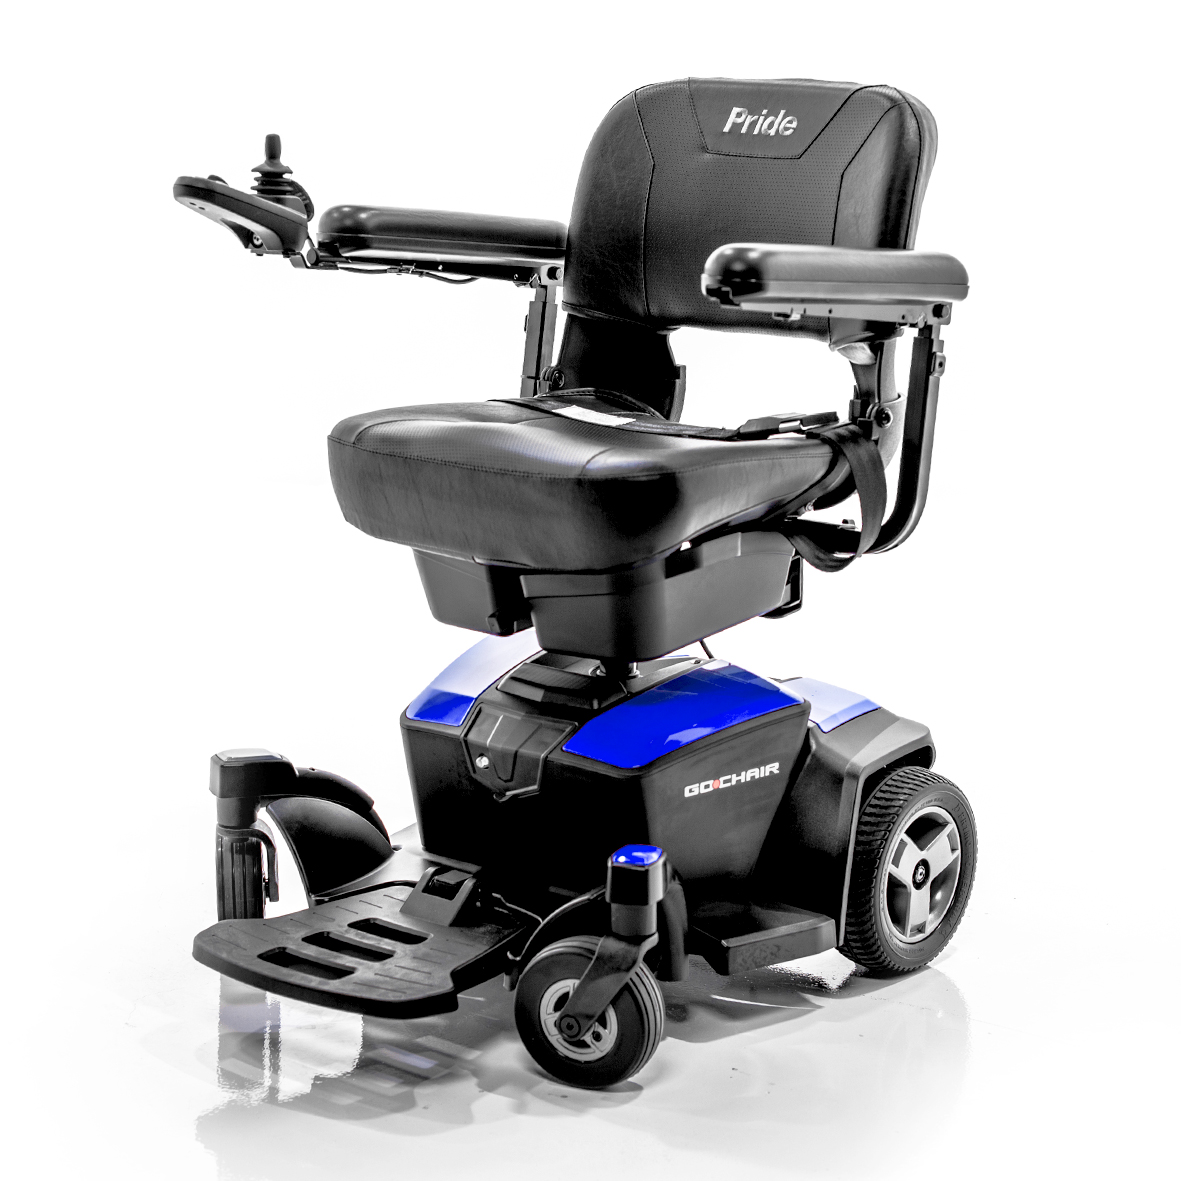 lv wheelchair